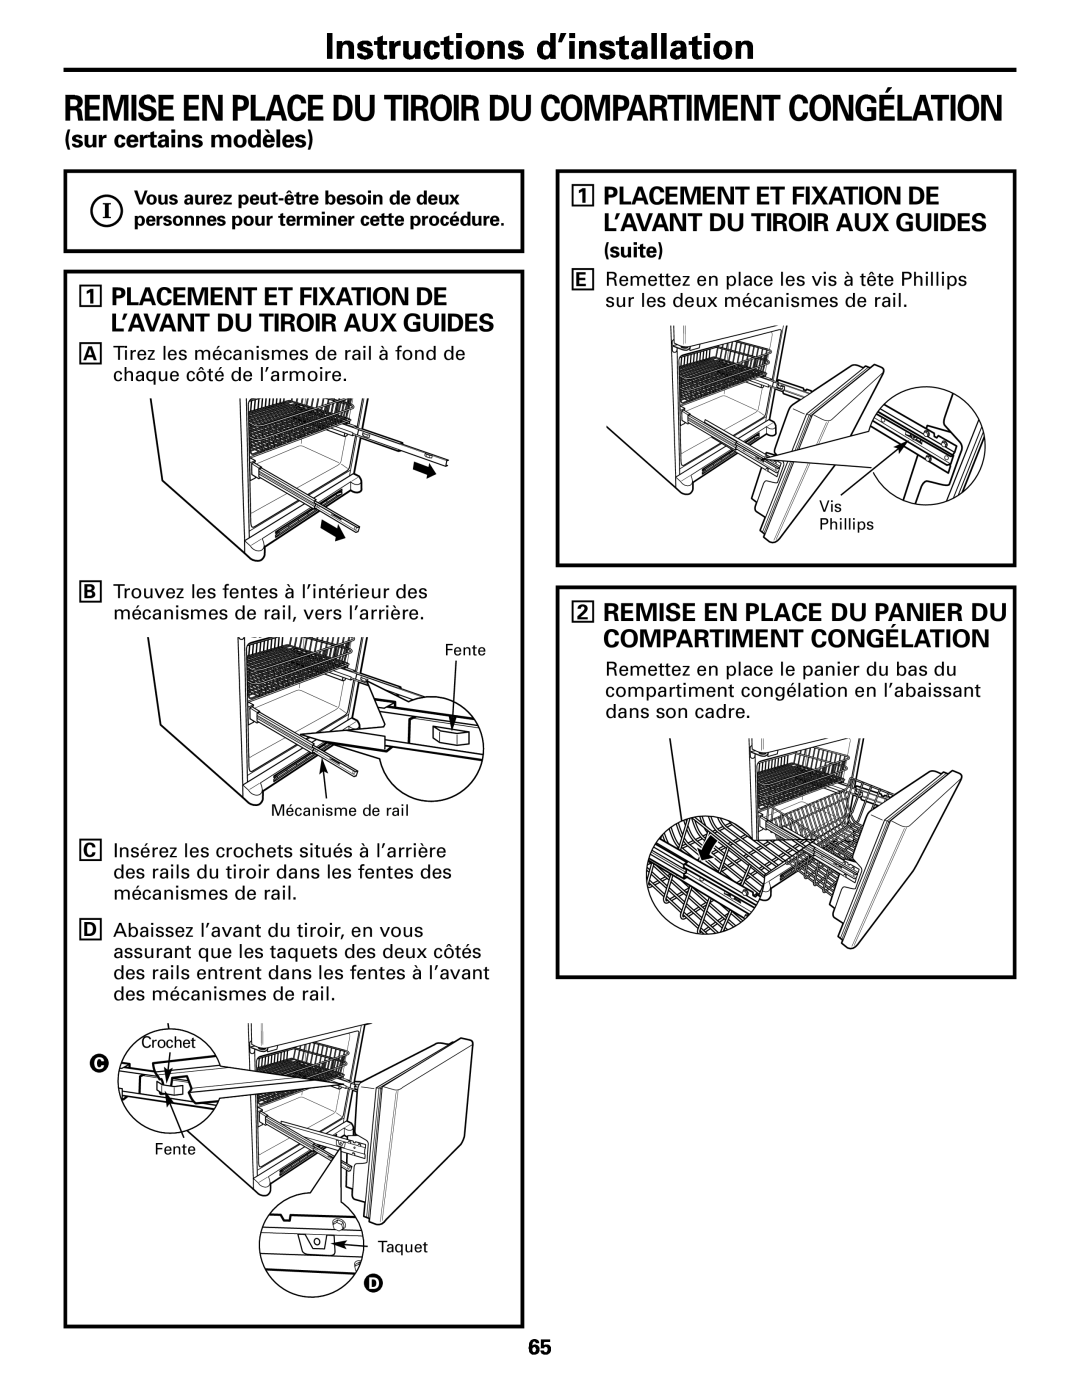 GE Monogram 20, 22 Placement Et Fixation De L’Avant Du Tiroir Aux Guides, suite, Instructions d’installation 